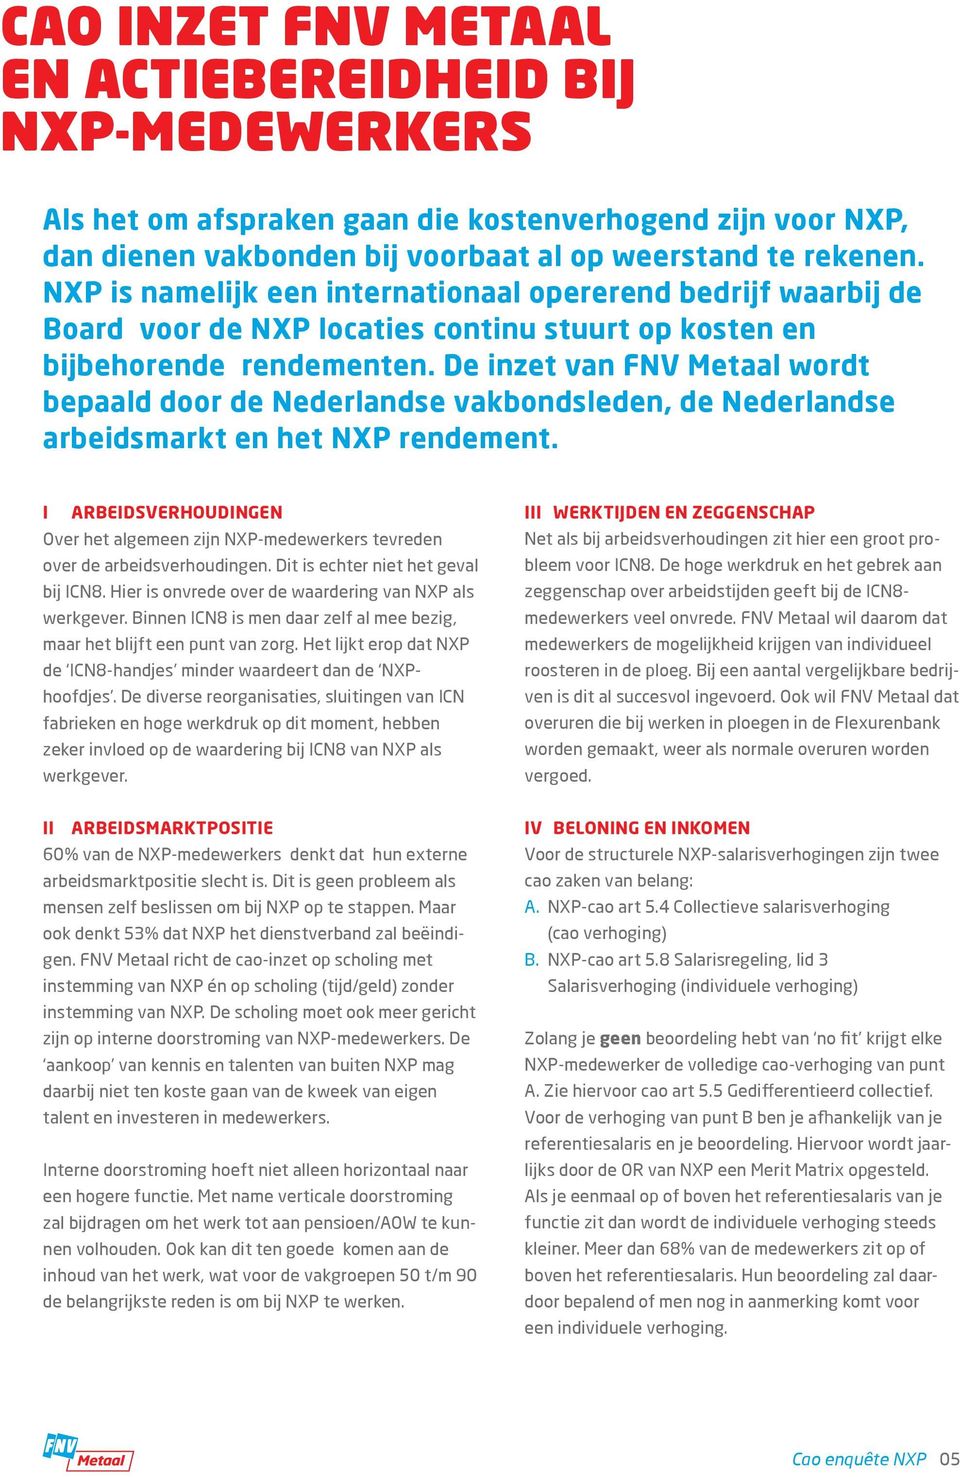 De inzet van FNV Metaal wordt bepaald door de Nederlandse vakbondsleden, de Nederlandse arbeidsmarkt en het NXP rendement.